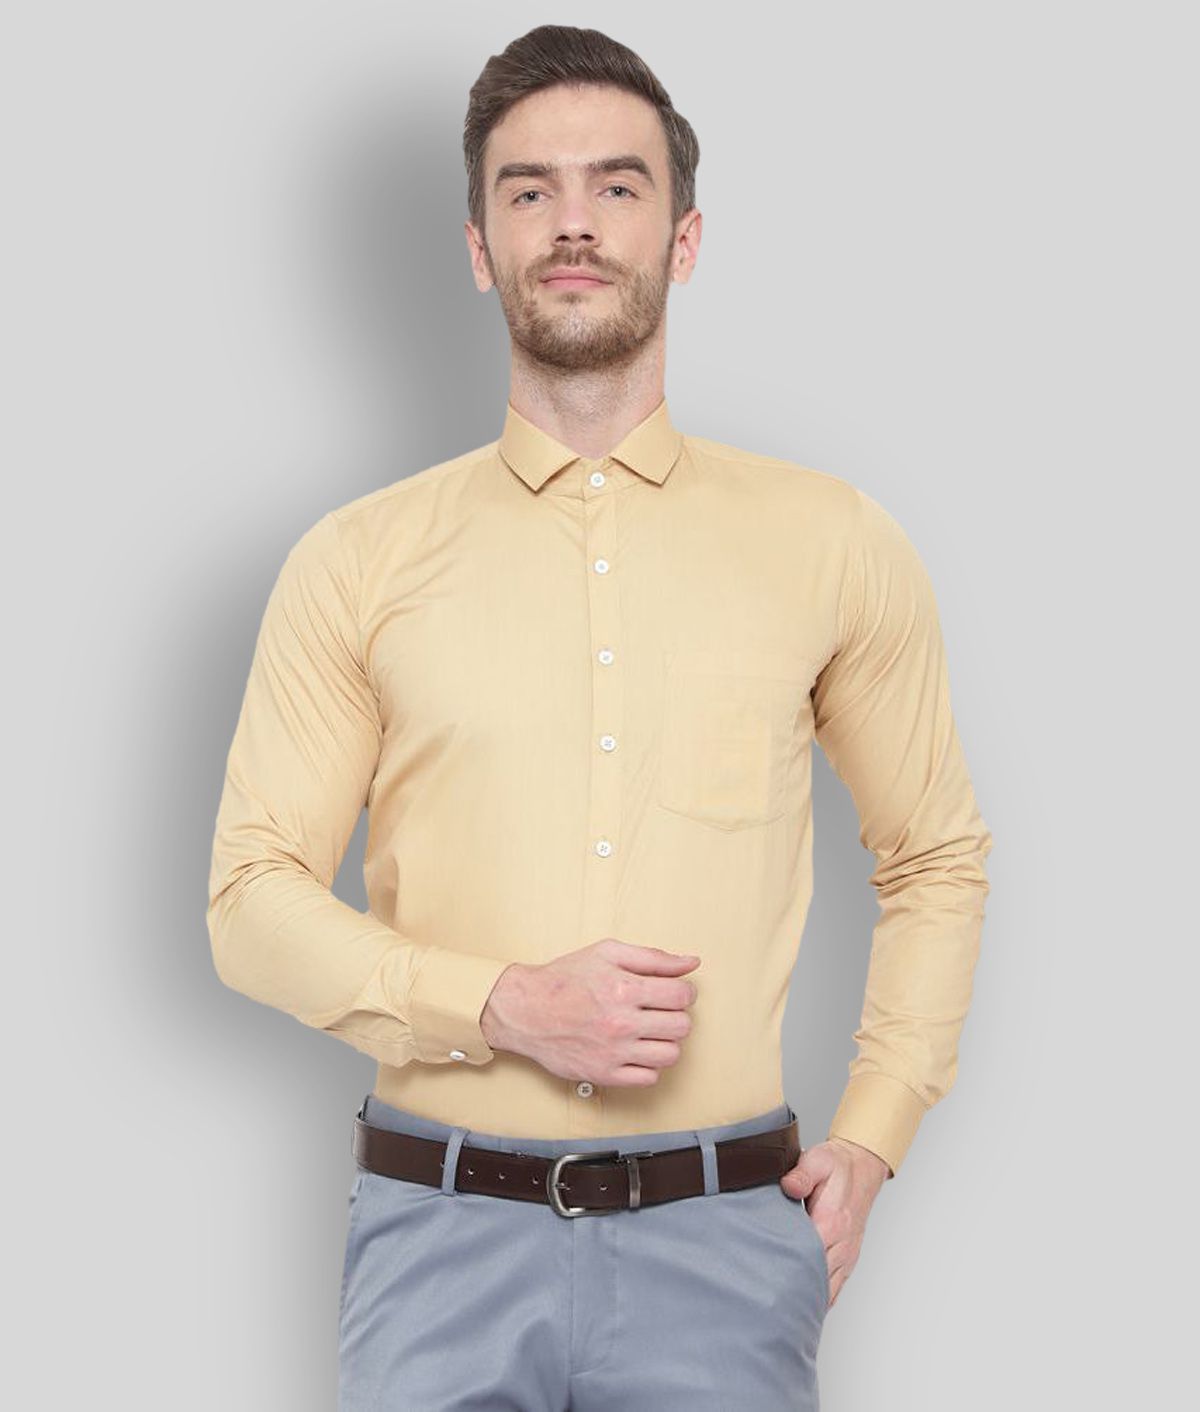     			SREY - Gold Cotton Slim Fit Men's Formal Shirt (Pack of 1)